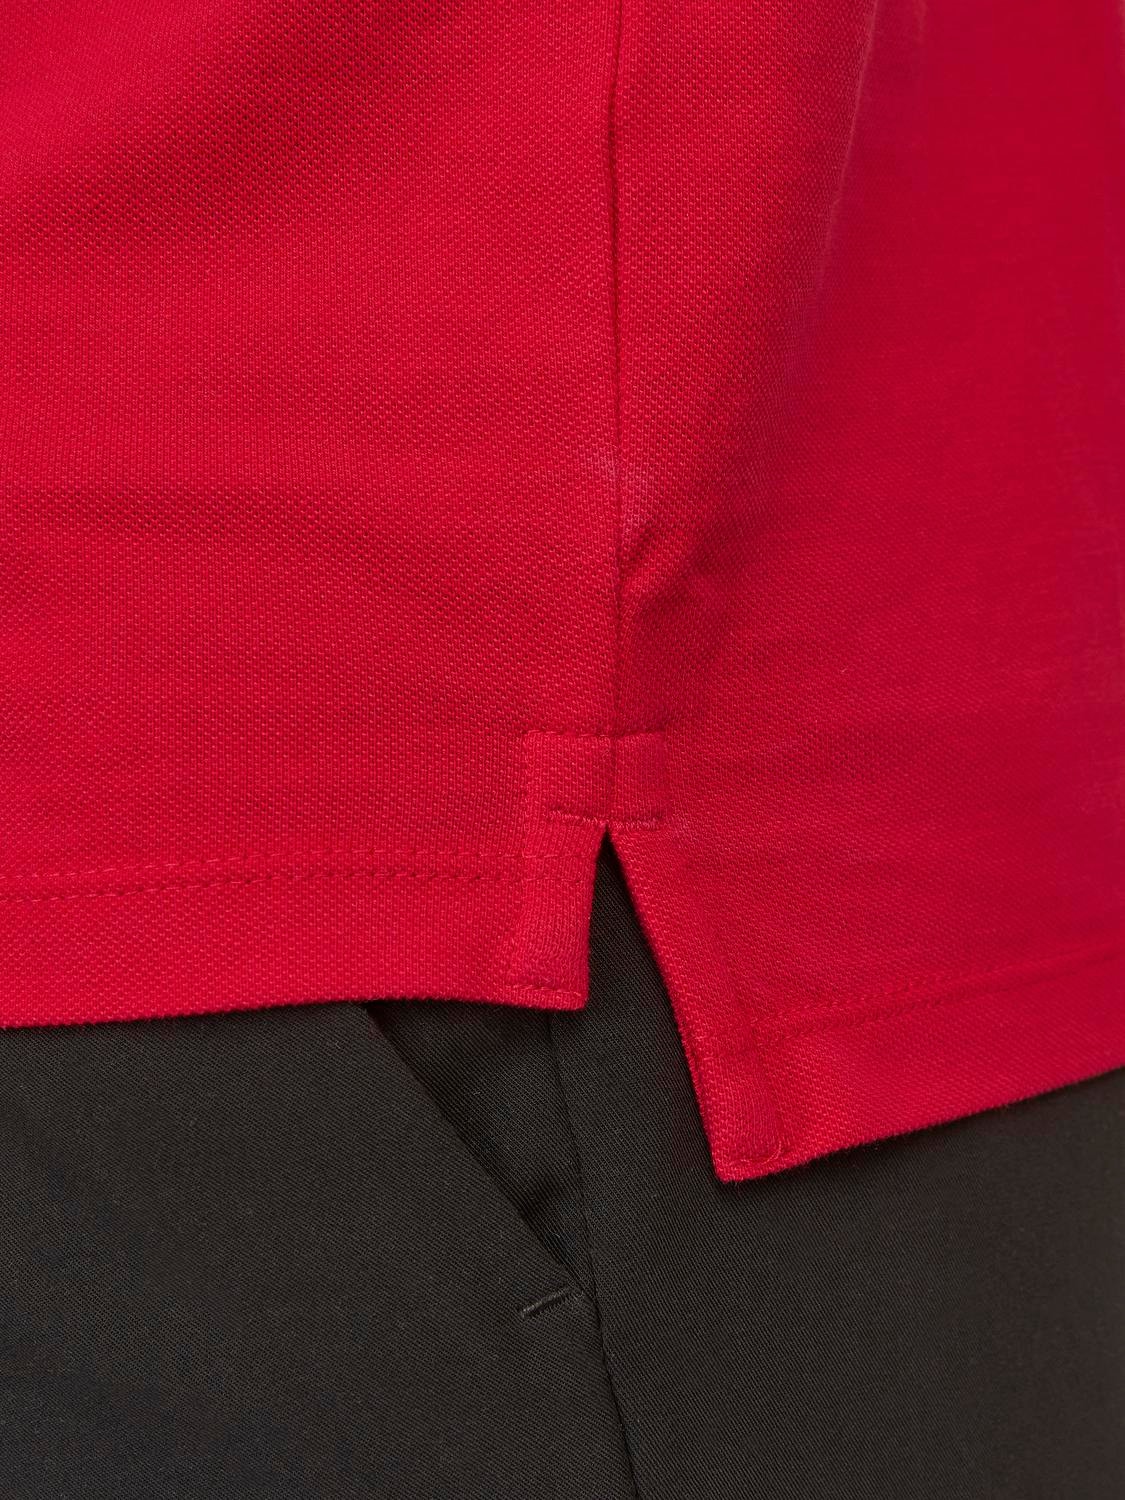 Jack & Jones Gładki Polo T-shirt -True Red - 12136668